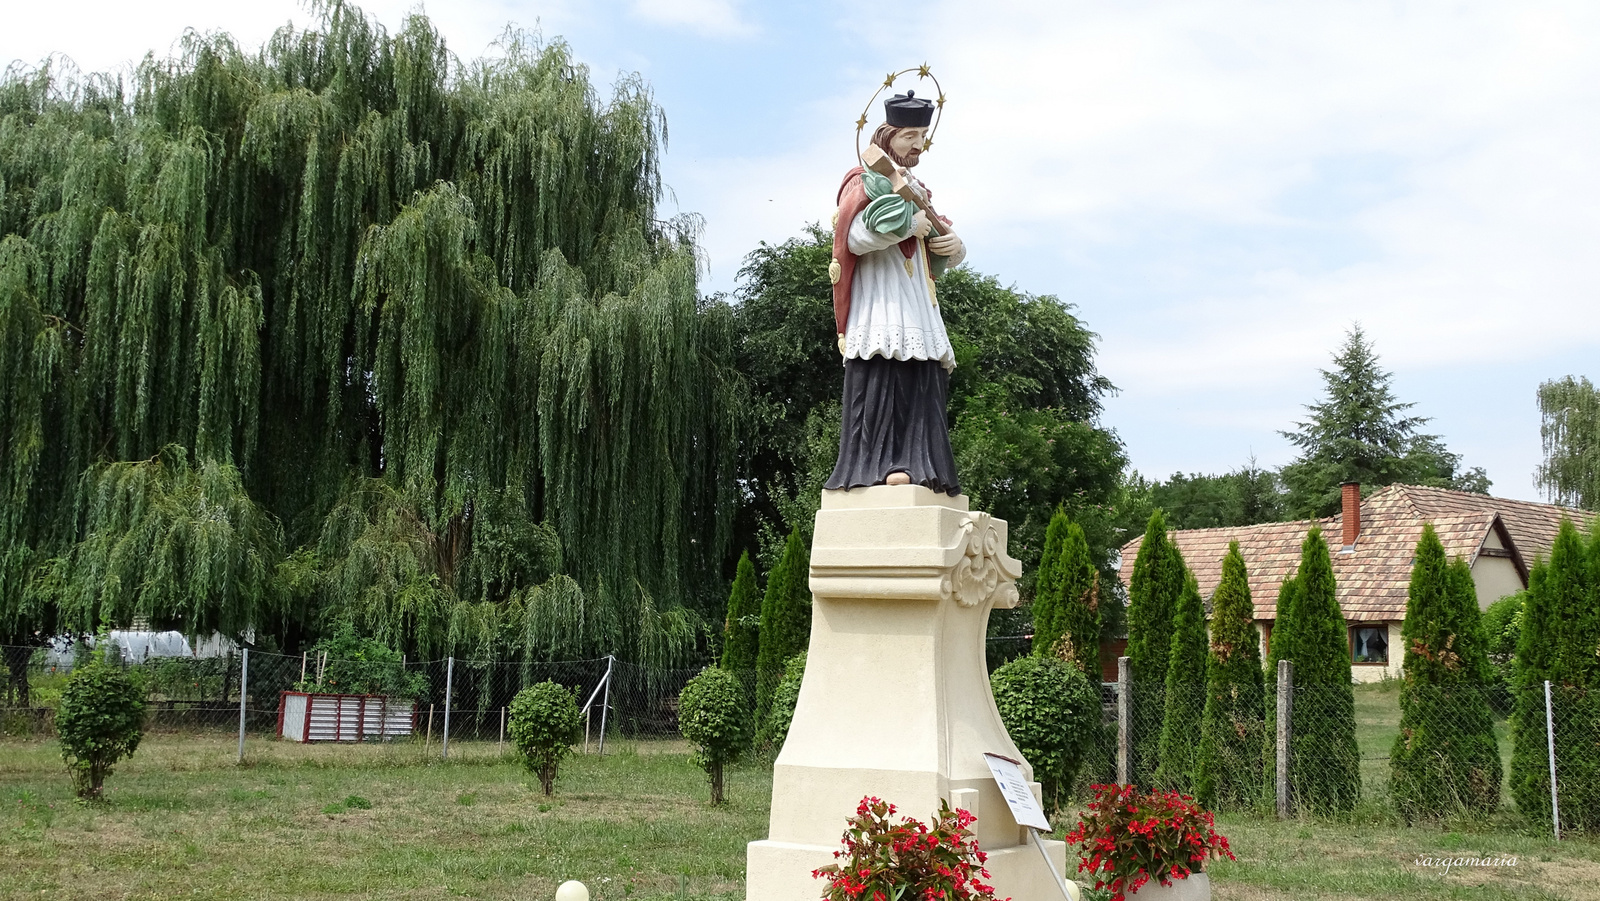 Nepomuki Szent János szobor Pusztavám (3)